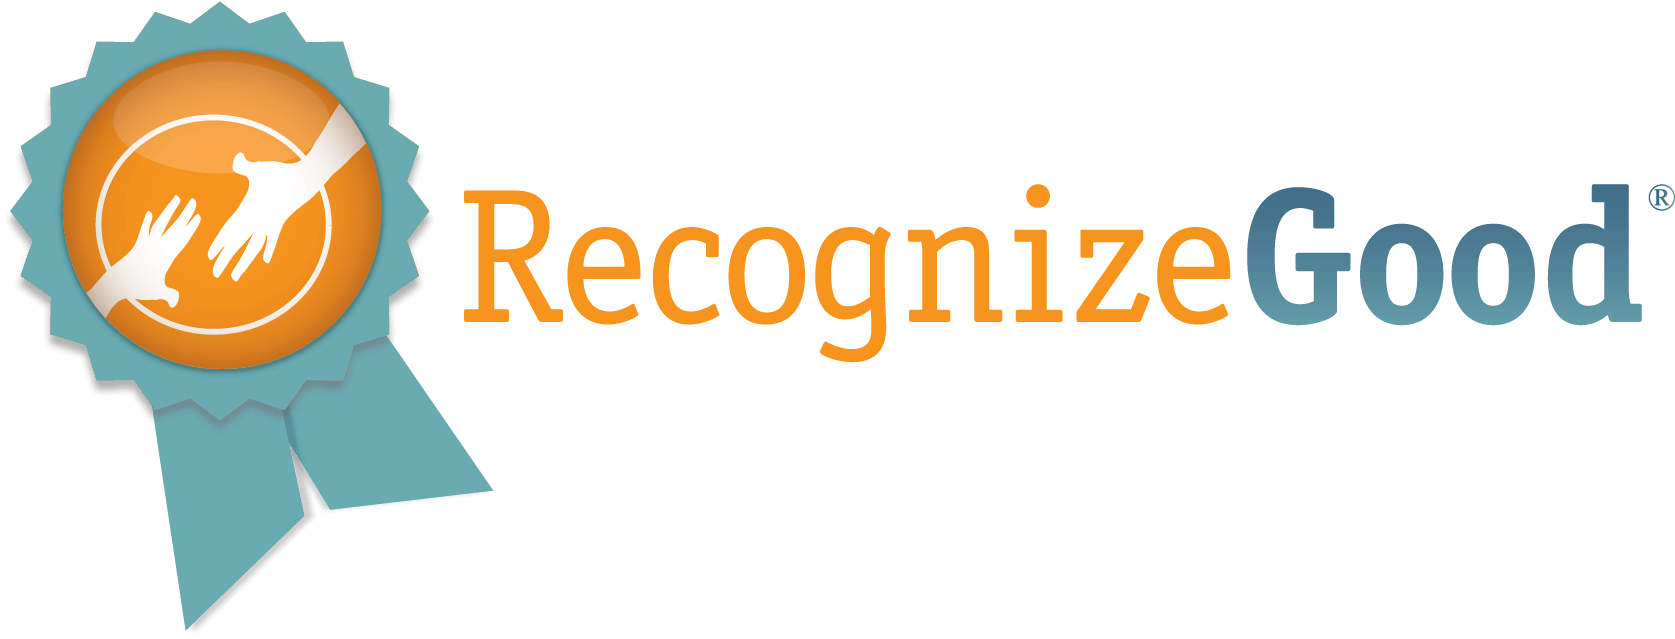 RecgonizeGood White Logo